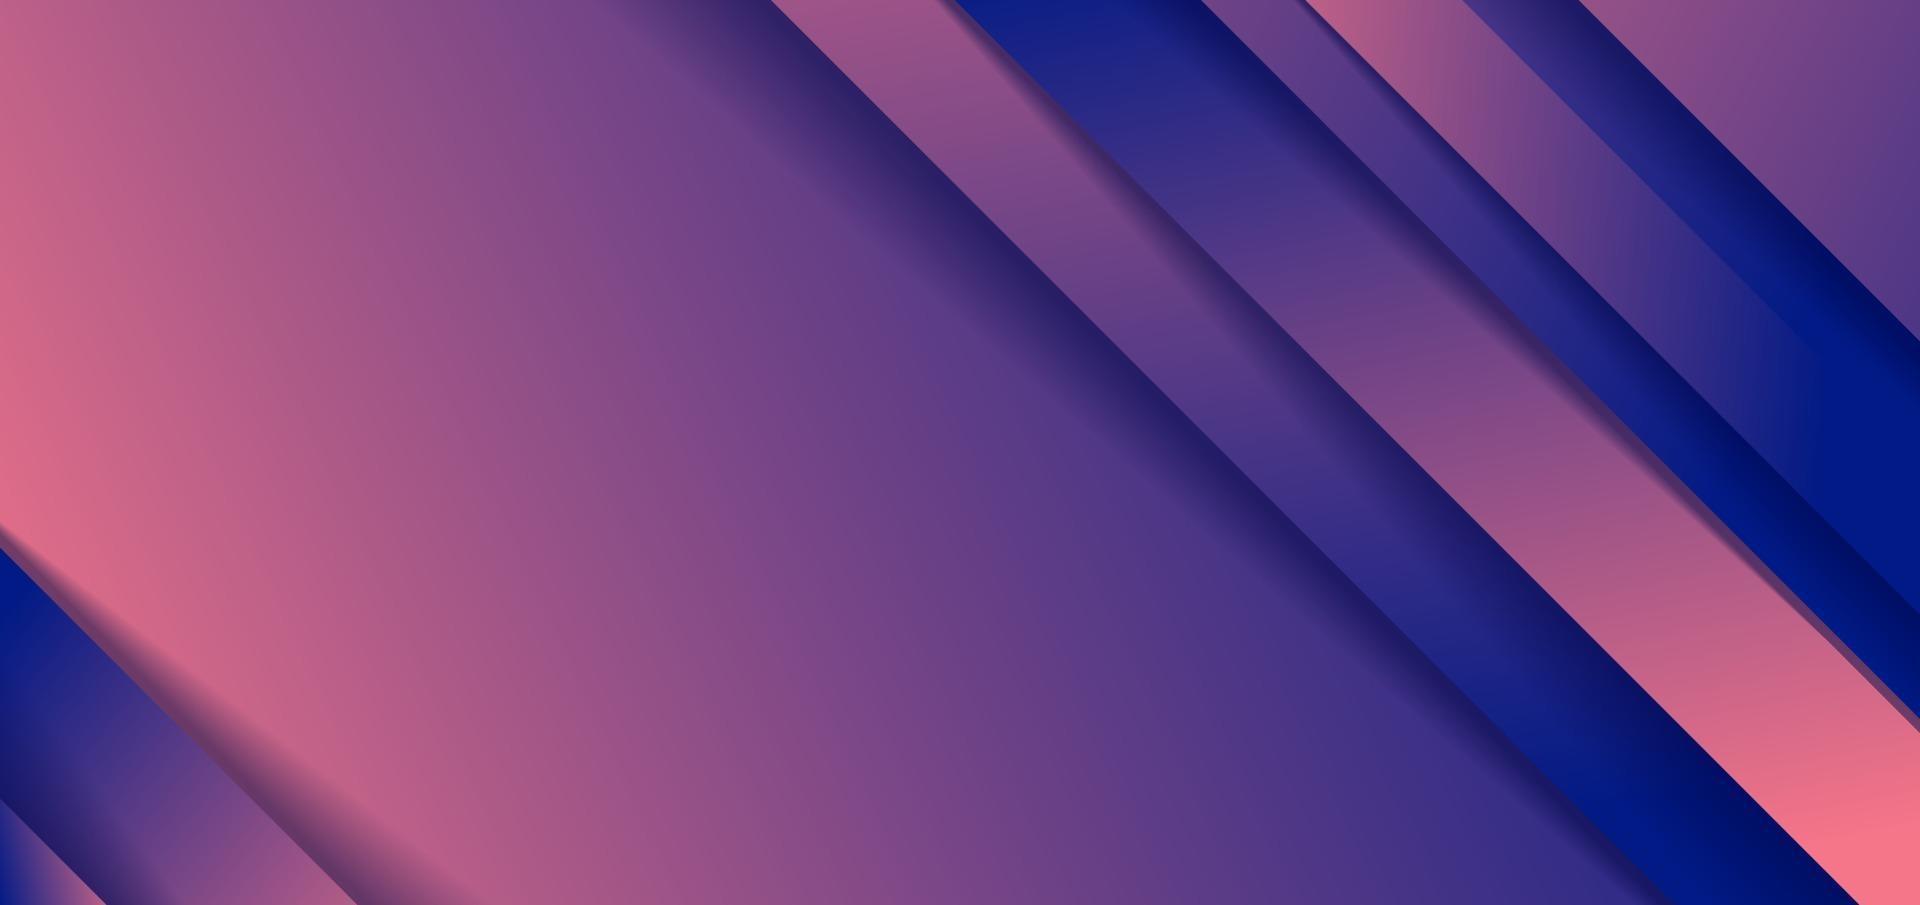 Fondo de forma de degradado azul y rosa de rayas diagonales abstractas con estilo de corte de papel de sombra vector